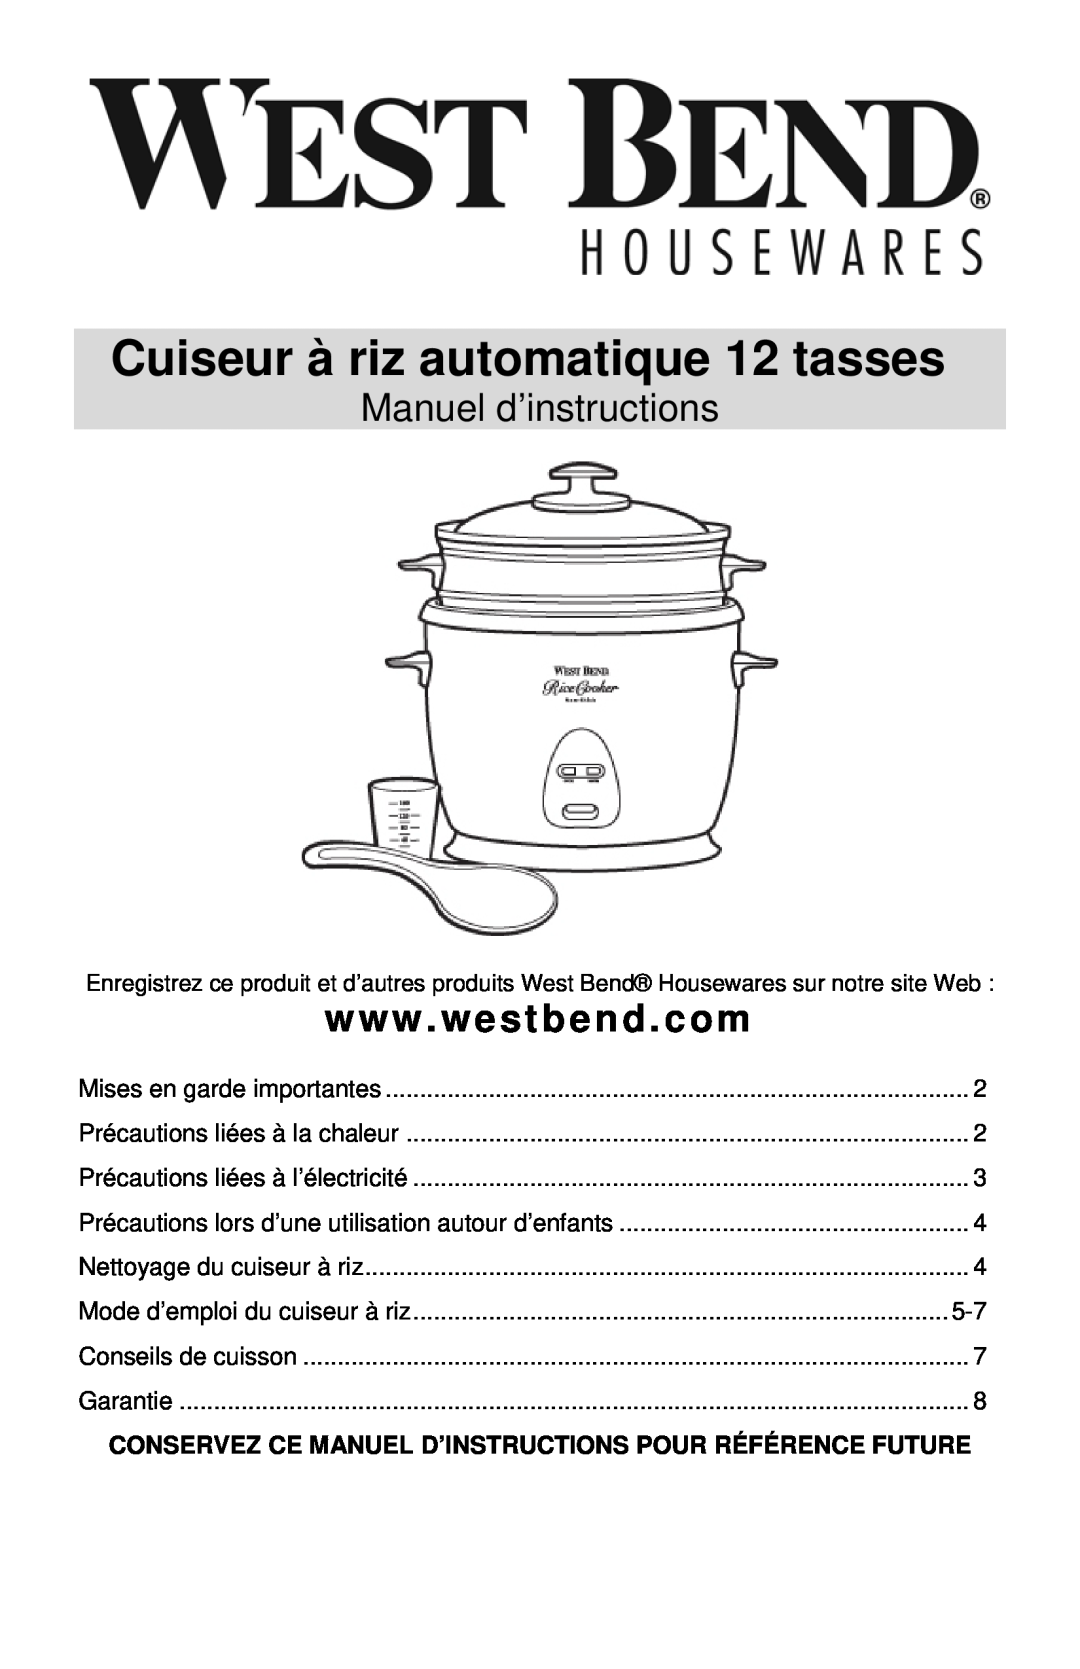 West Bend 12-Cup Automatic Rice Cooker instruction manual Cuiseur à riz automatique 12 tasses, Manuel d’instructions 